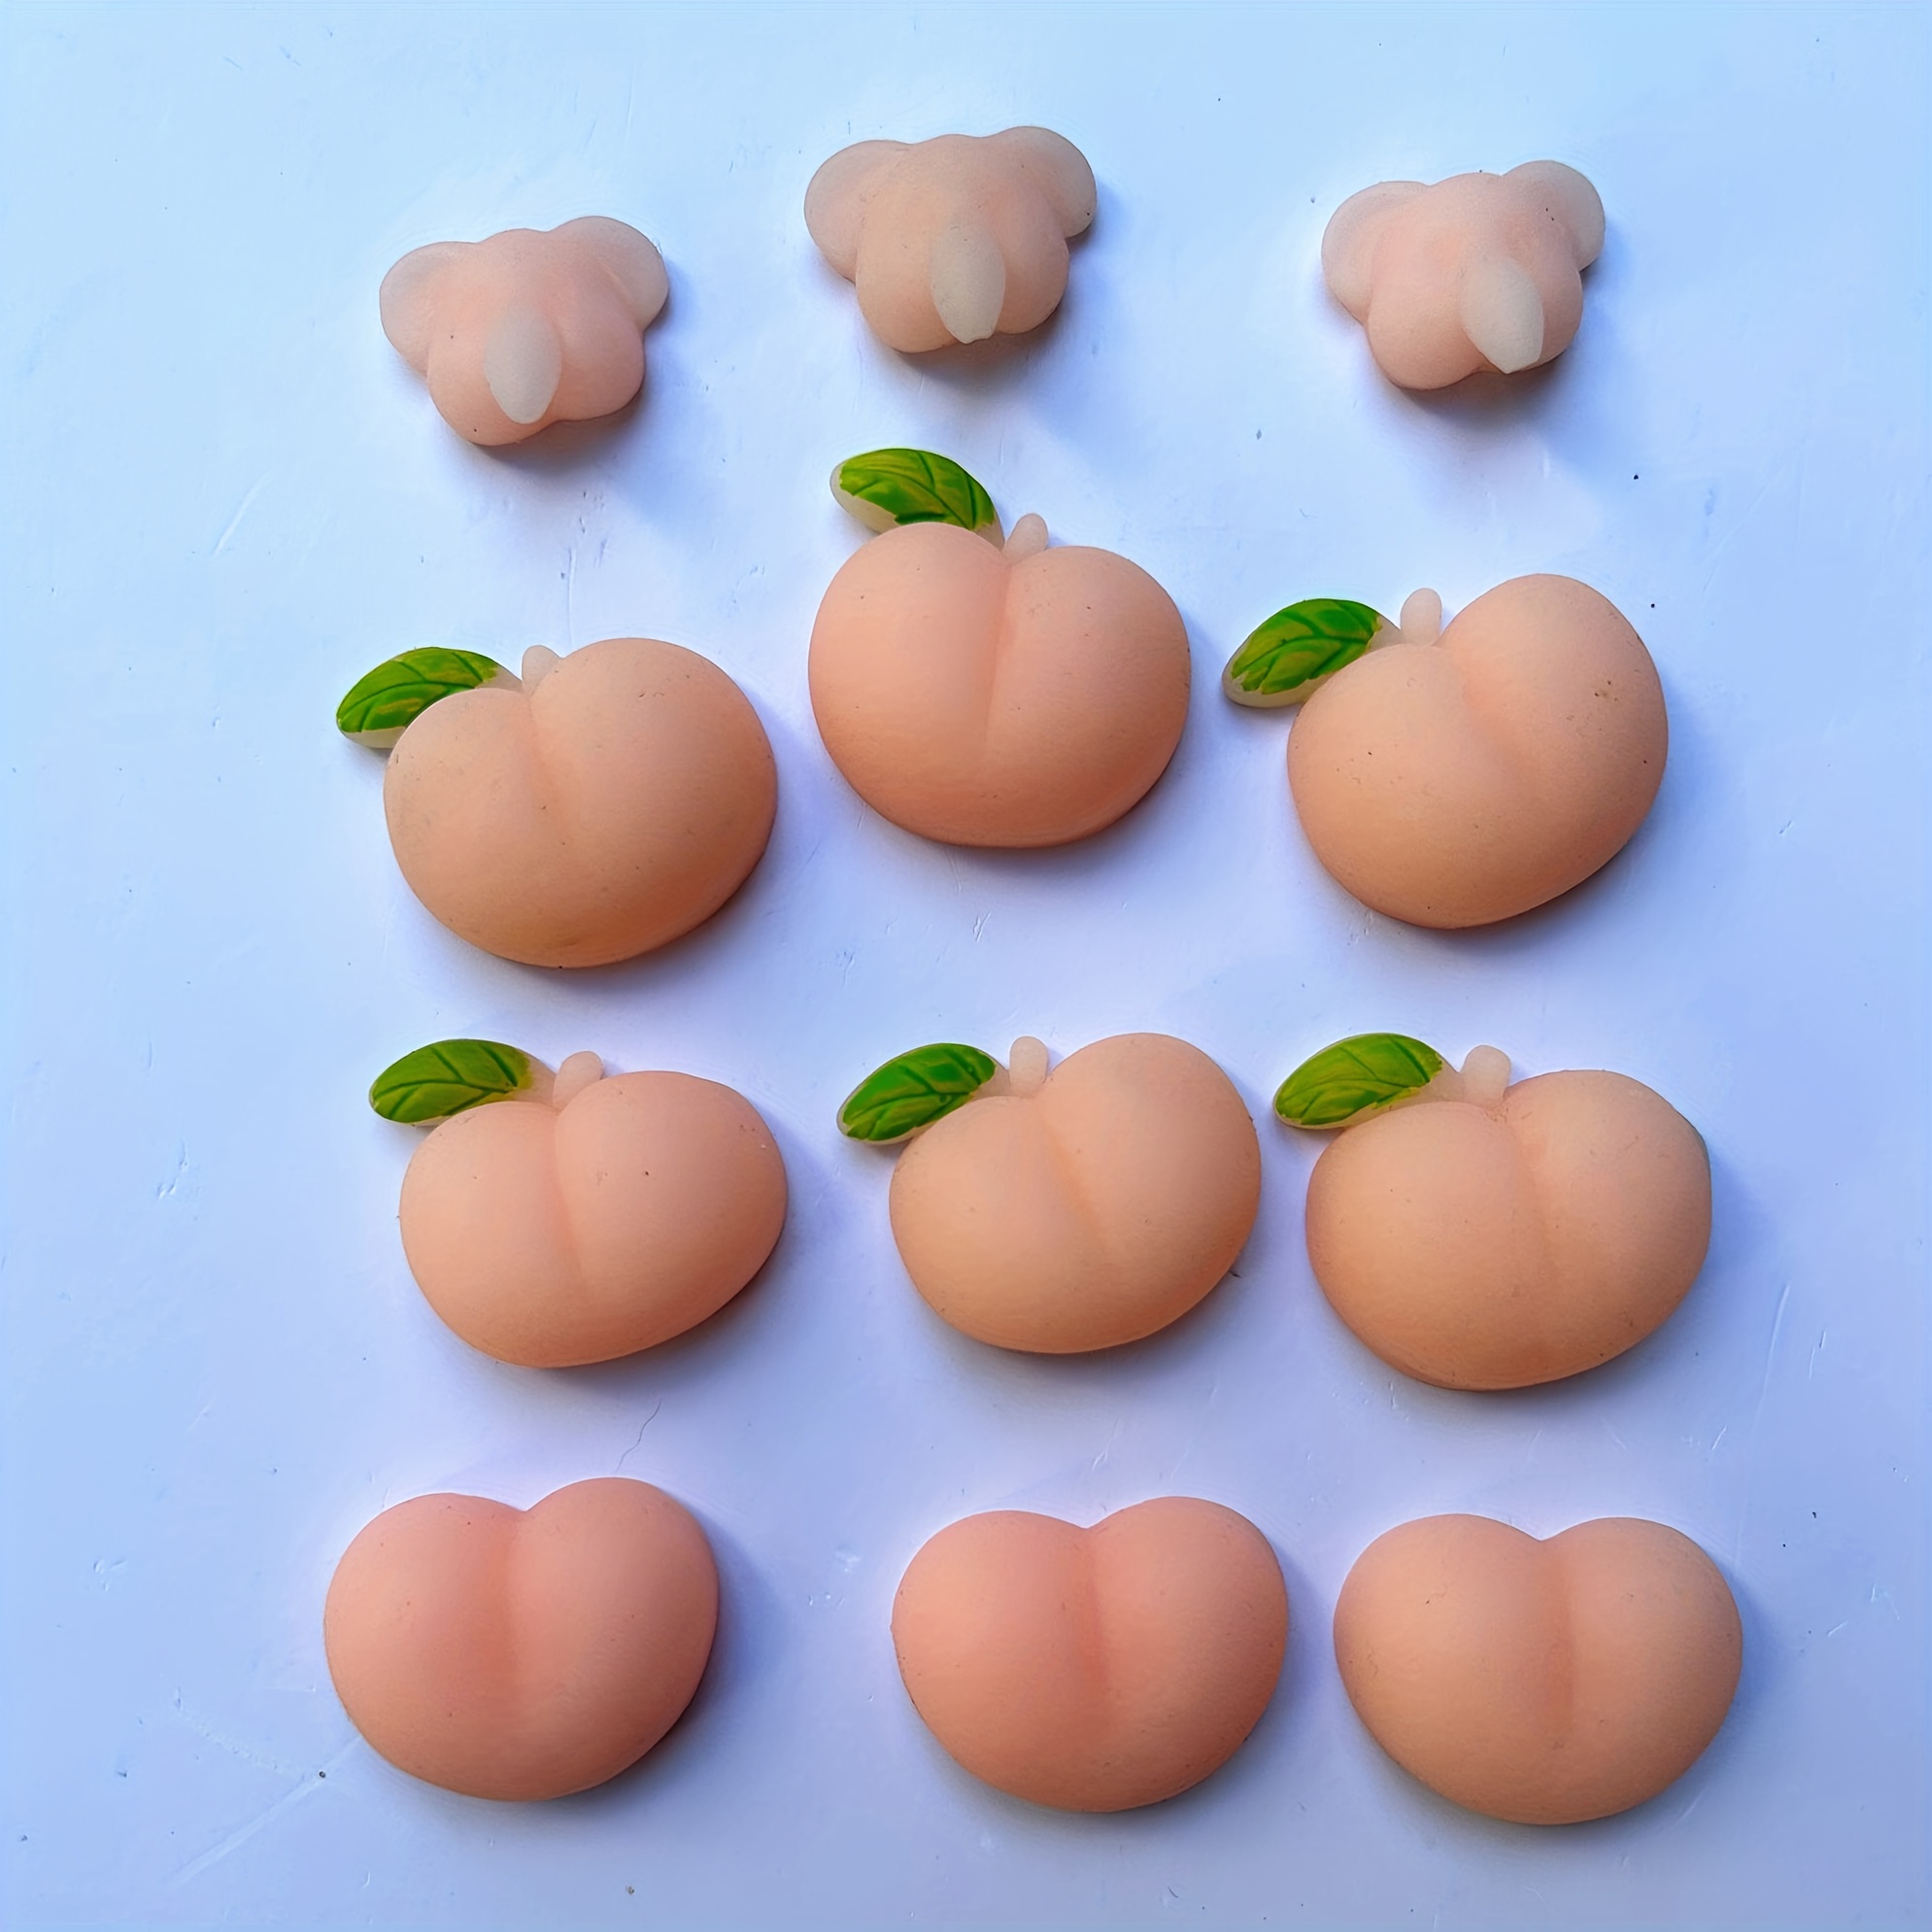 Just Peachy! Cute Peach Stress Ball – KSC